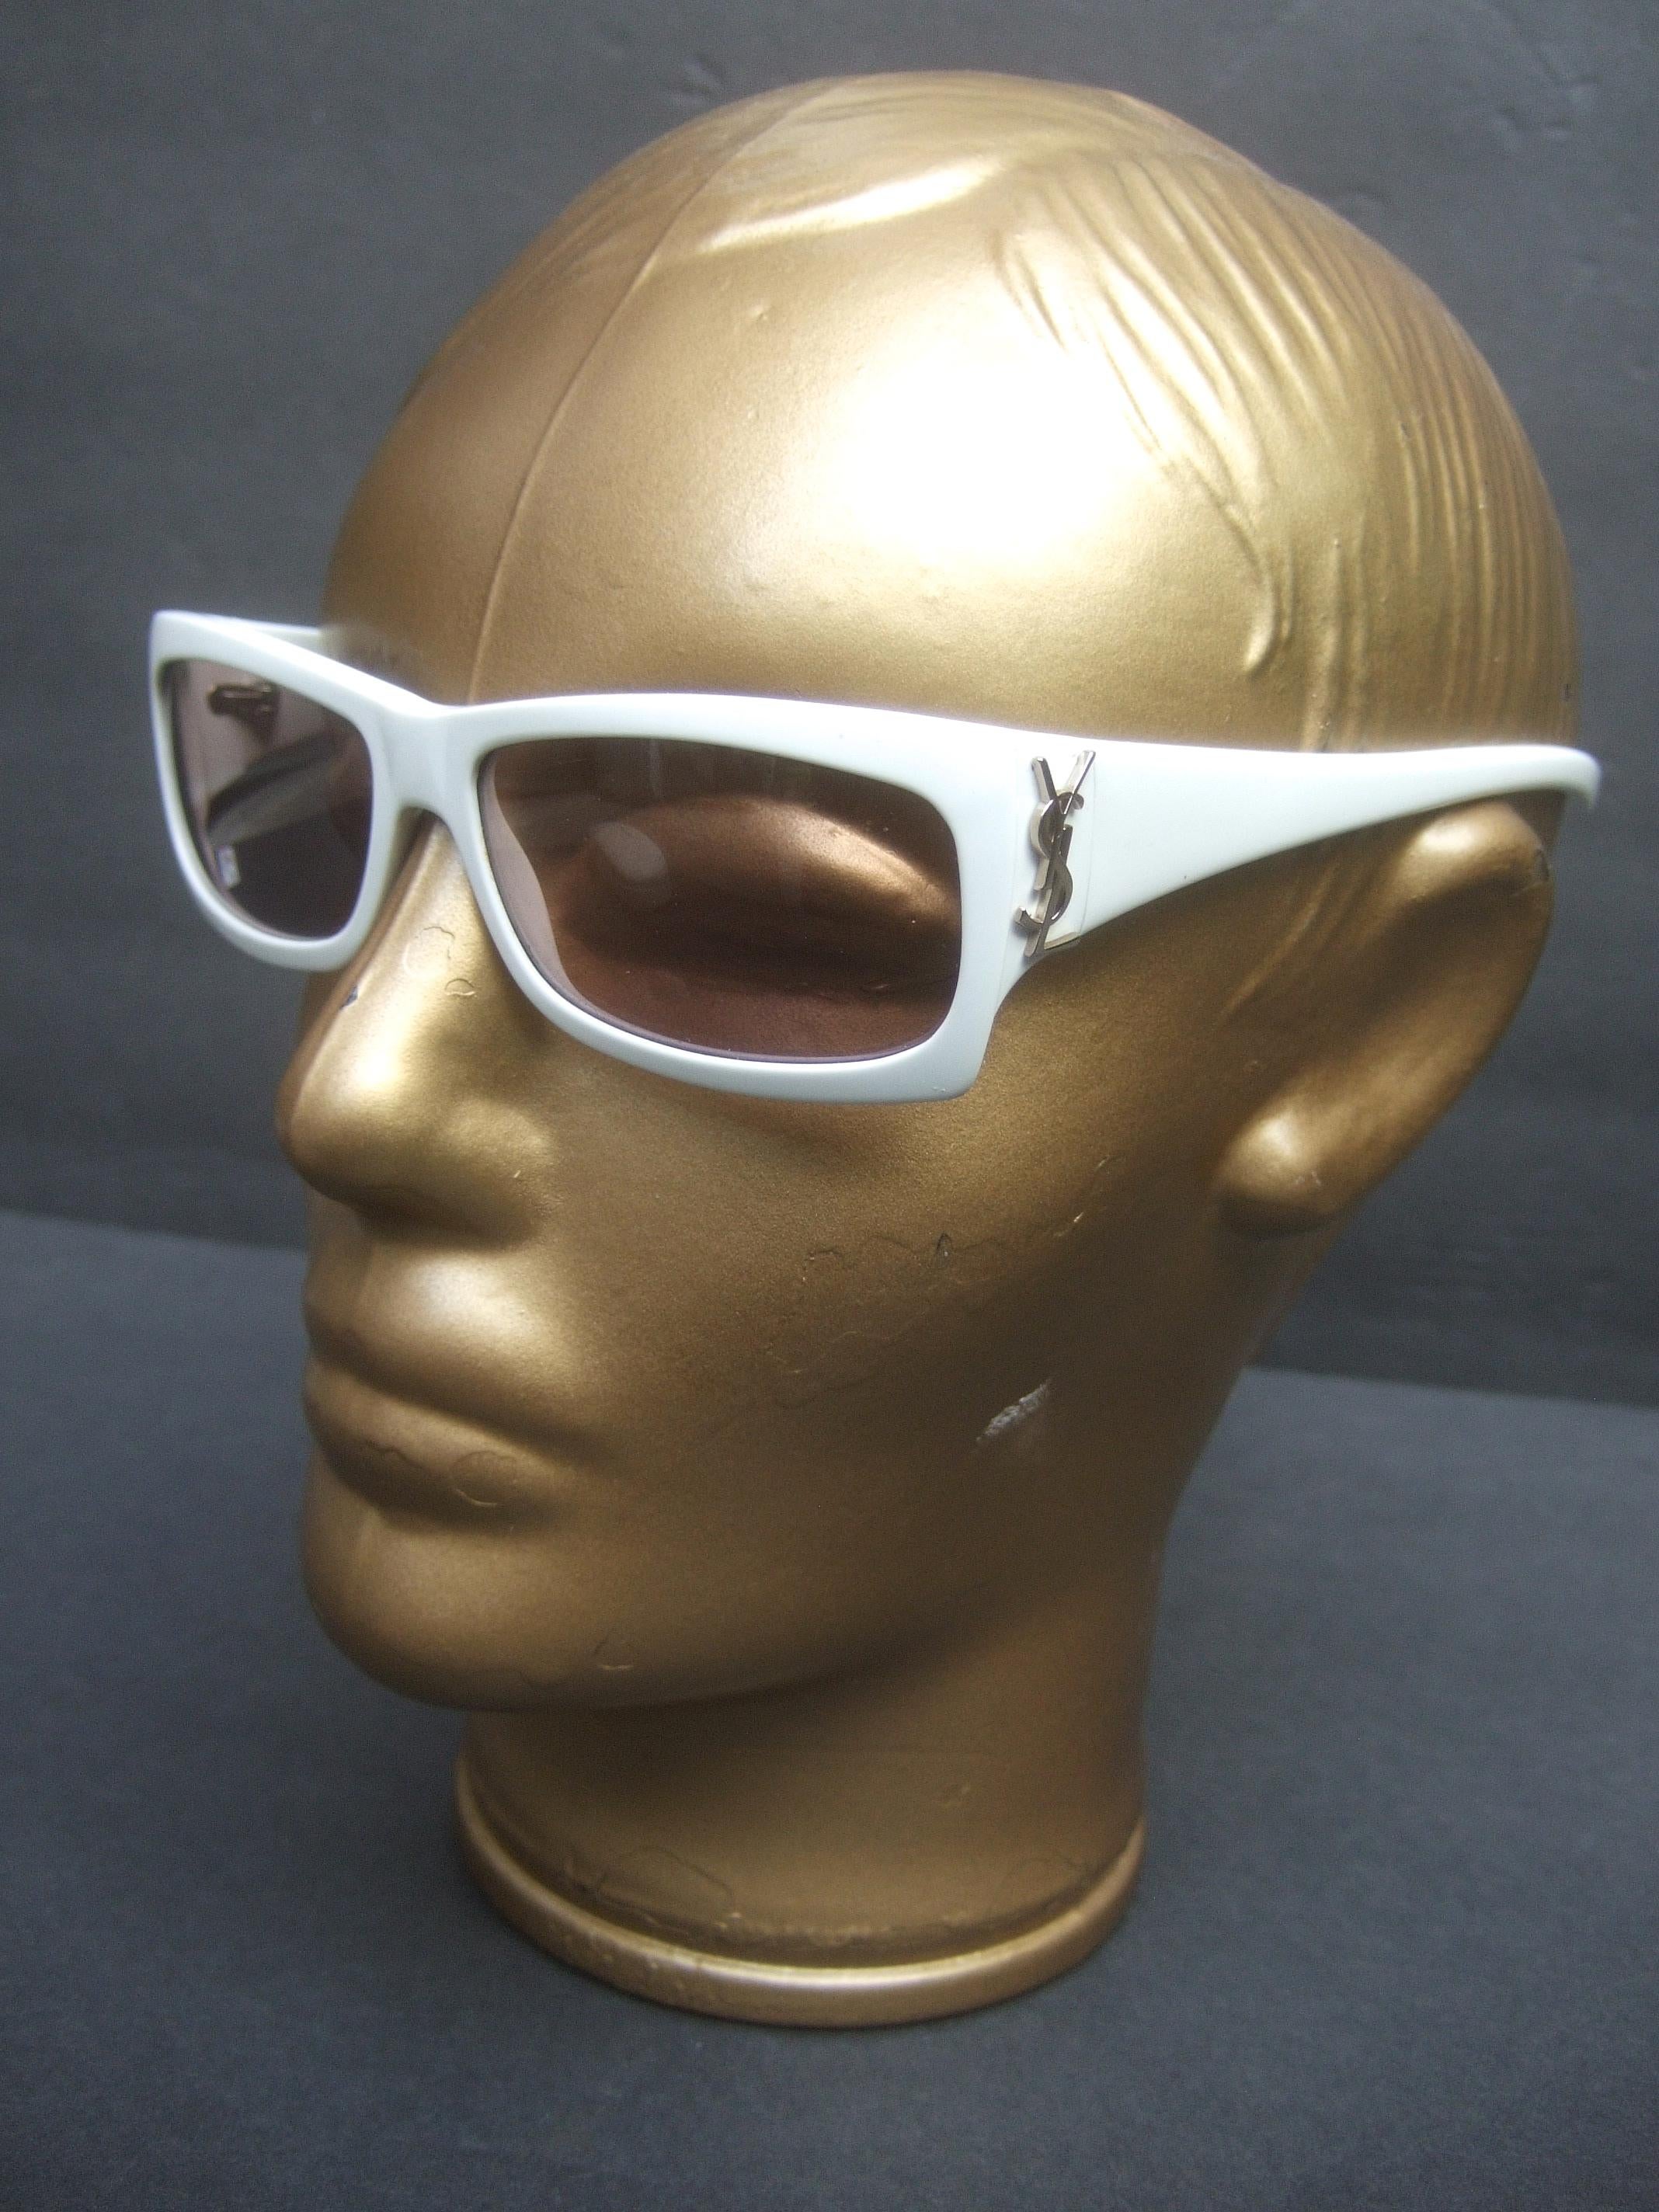 Women's Yves Saint Laurent Italian White Plastic Frame Sunglasses in YSL Case c 1990s